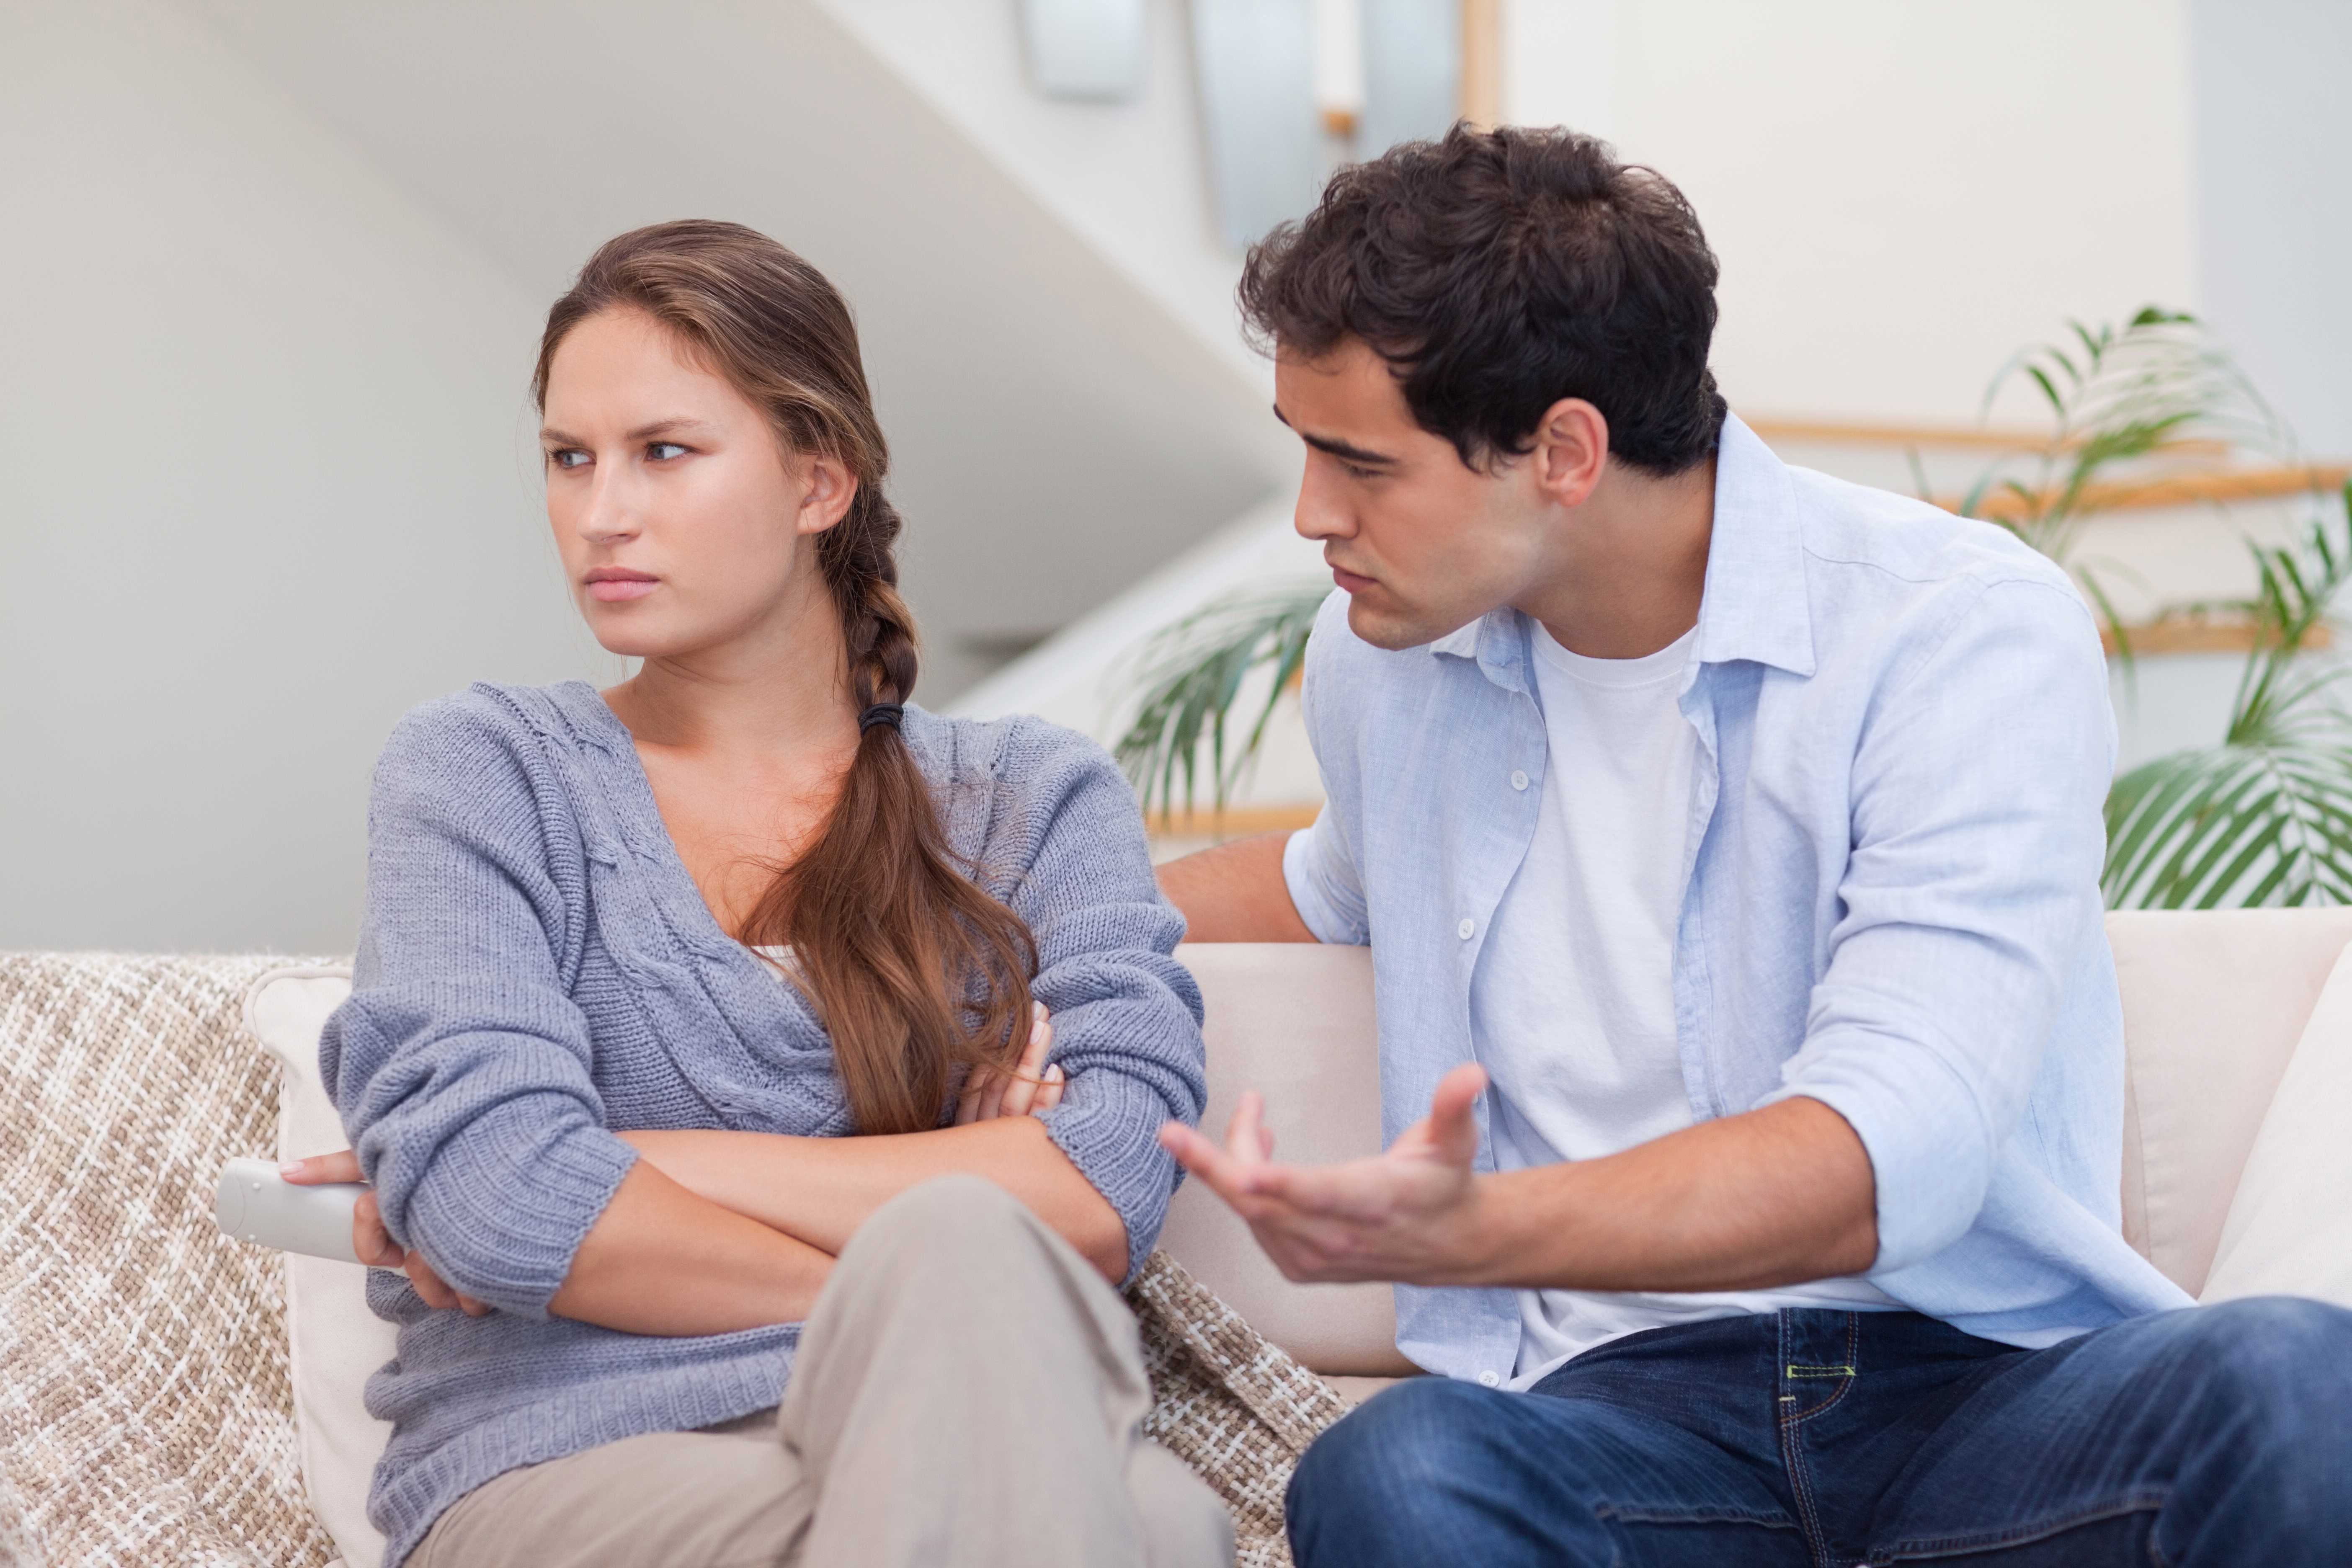 Как наладить отношения со своей женой и вернуть ее расположение? можно ли возобновить былые чувства, восстановить взаимопонимание? советы психологов